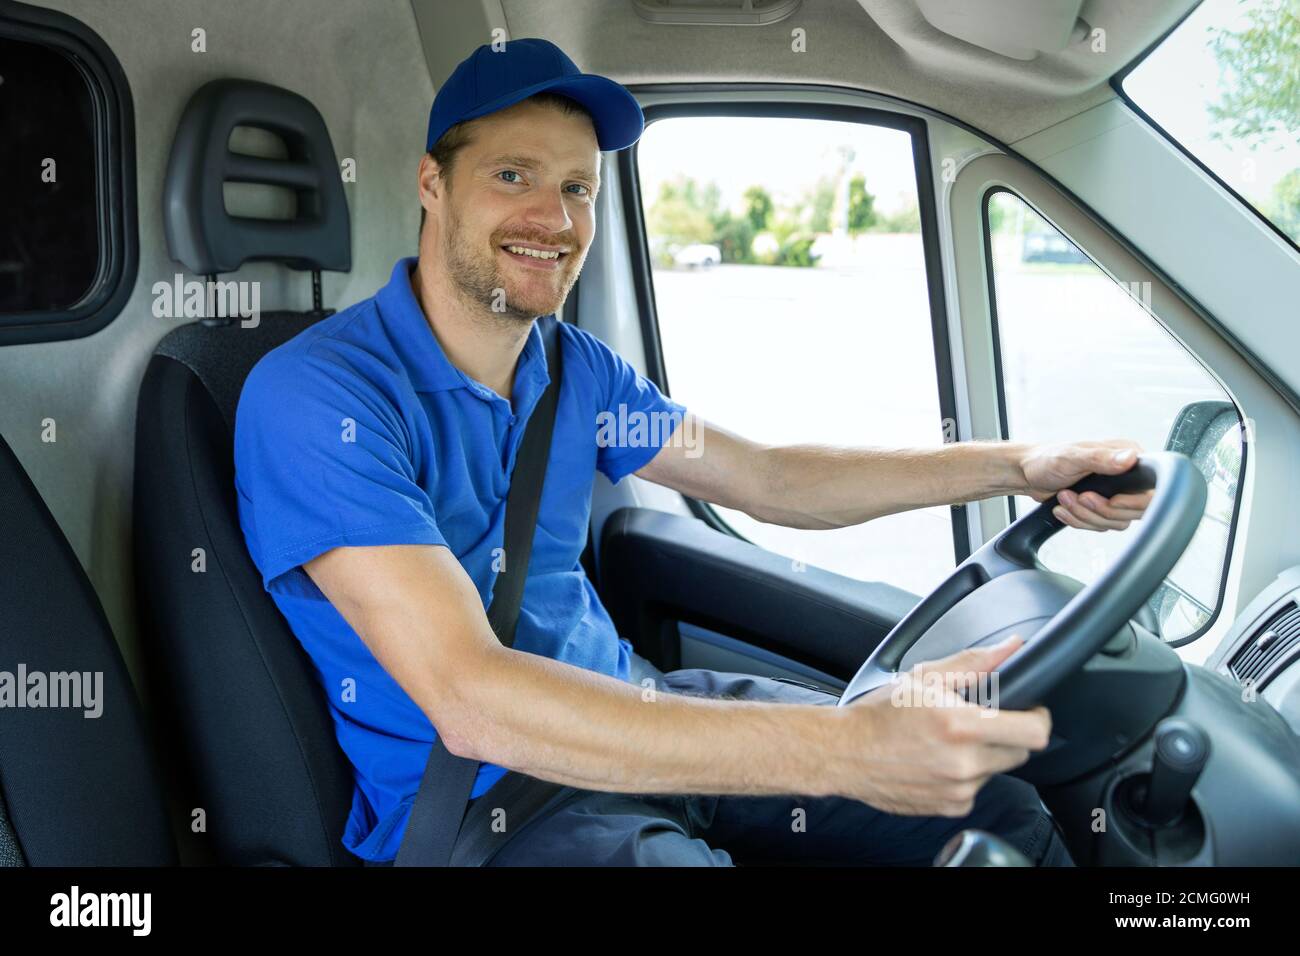 Transport Services - junger männlicher Fahrer in blauer Uniform fahren einen Van. Lächelnd an der Kamera Stockfoto